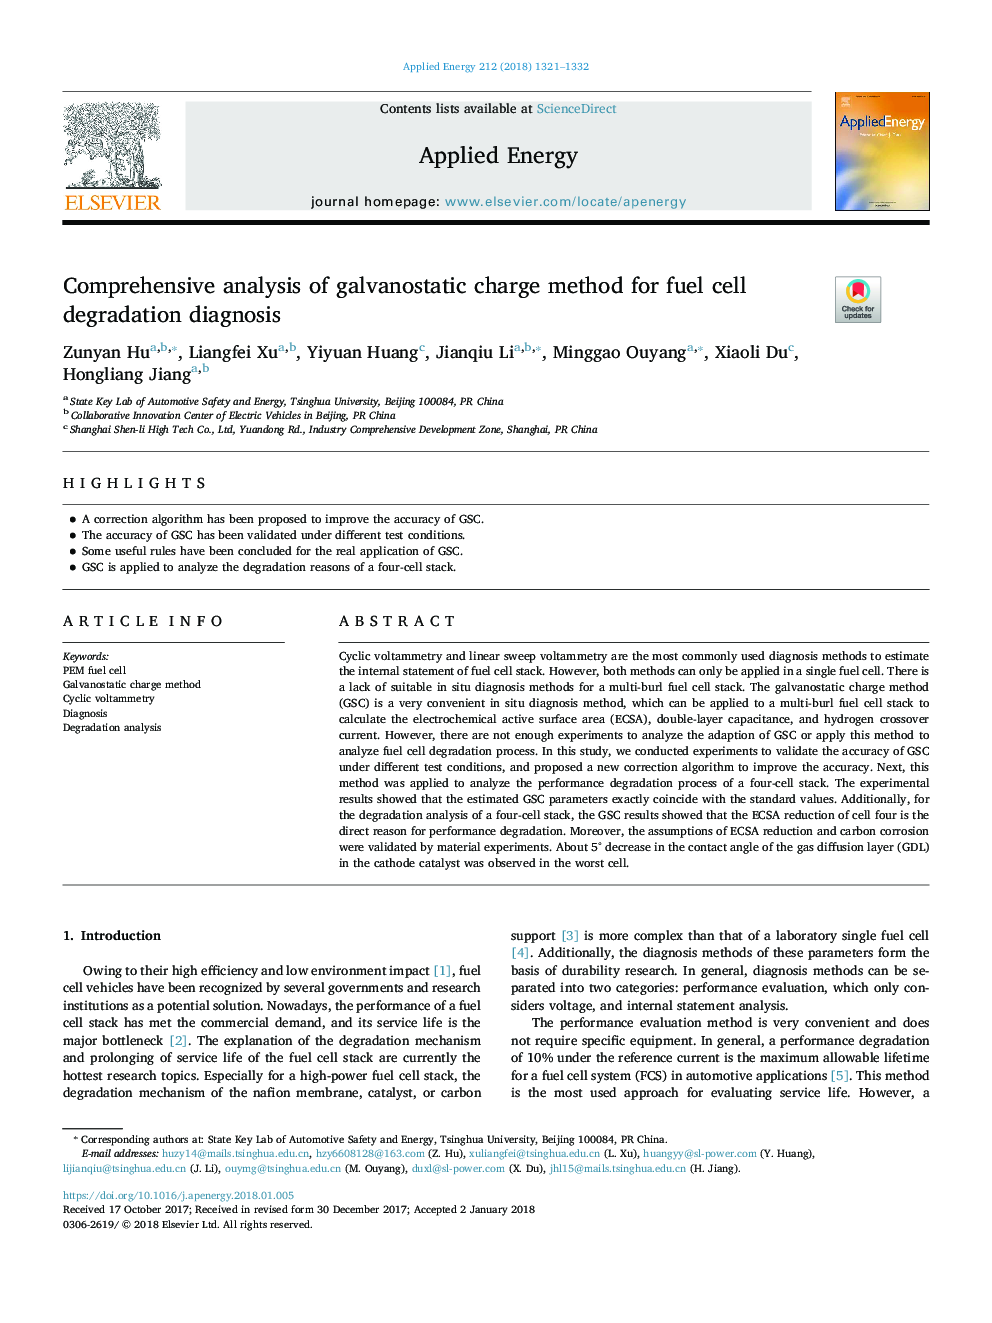 تجزیه و تحلیل جامع روش شارژ گالوانوستازی برای تشخیص نقص سوخت سلول 